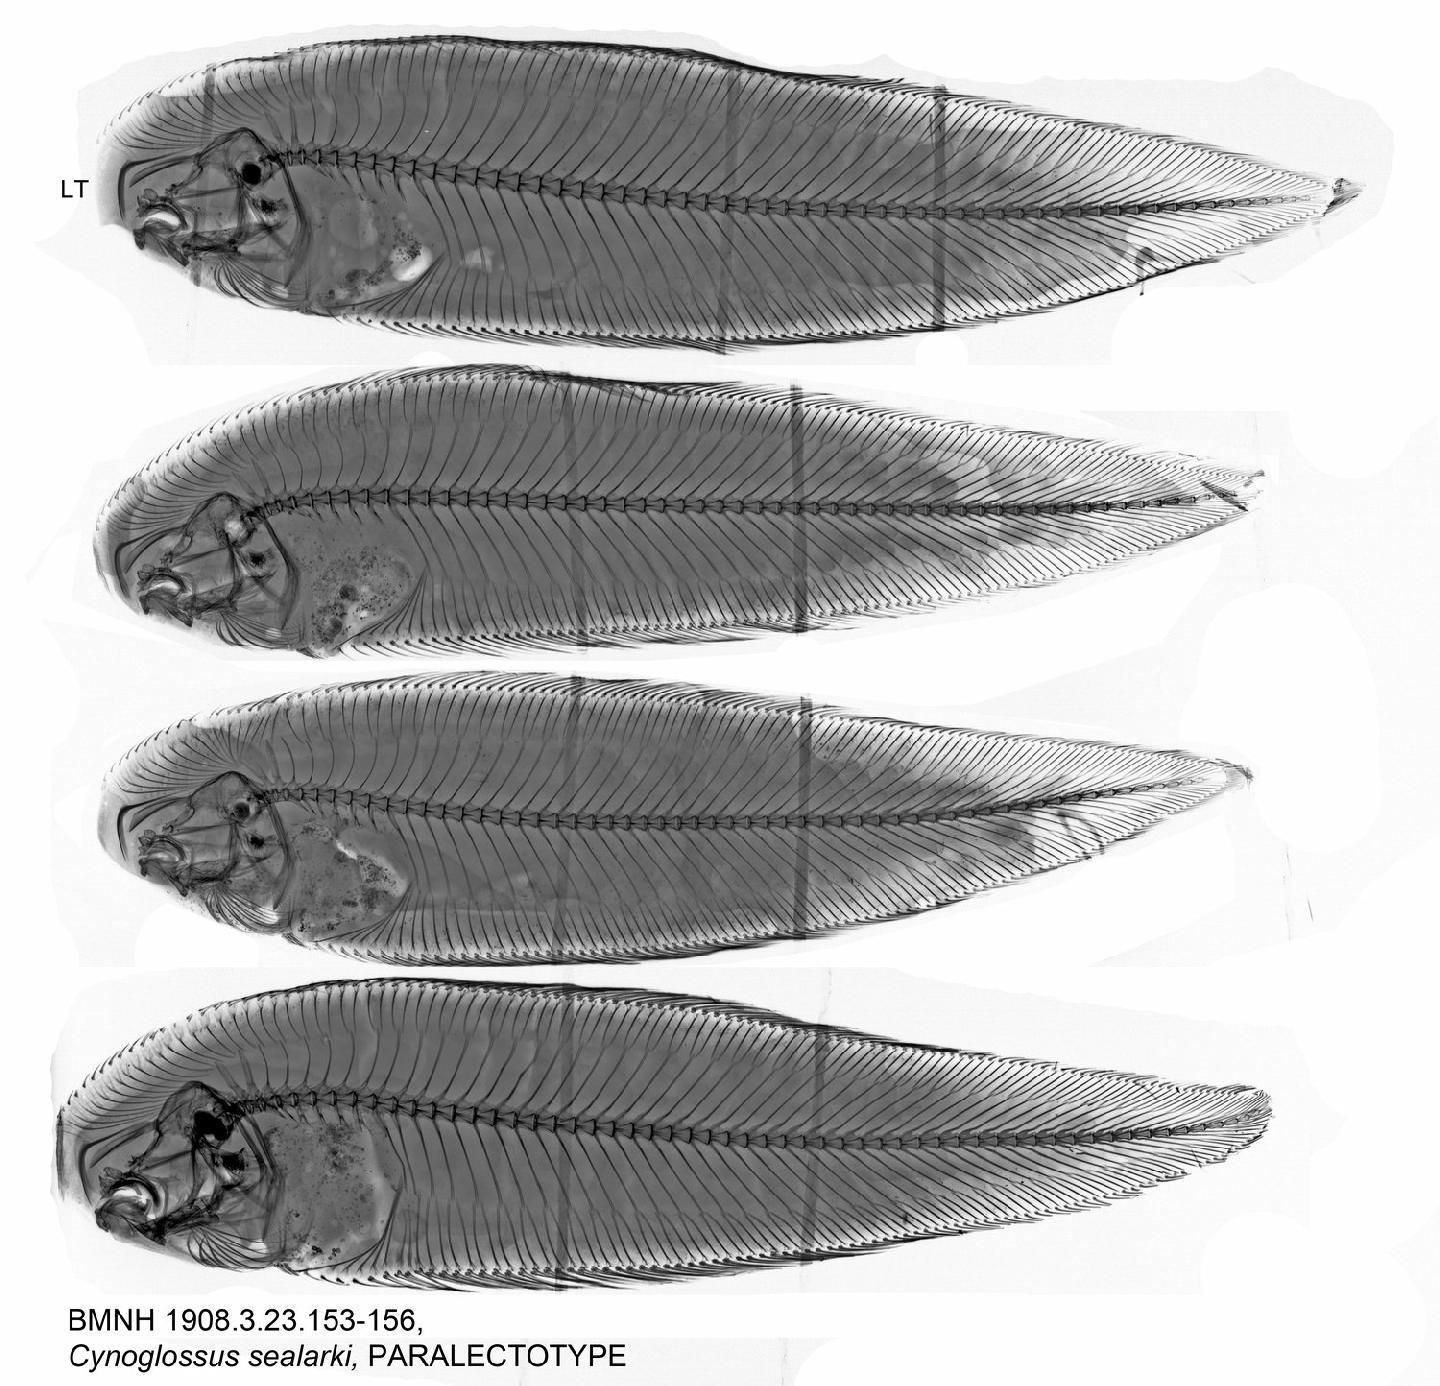 To NHMUK collection (Cynoglossus sealarki Regan, 1908; PARALECTOTYPE; NHMUK:ecatalogue:3129982)